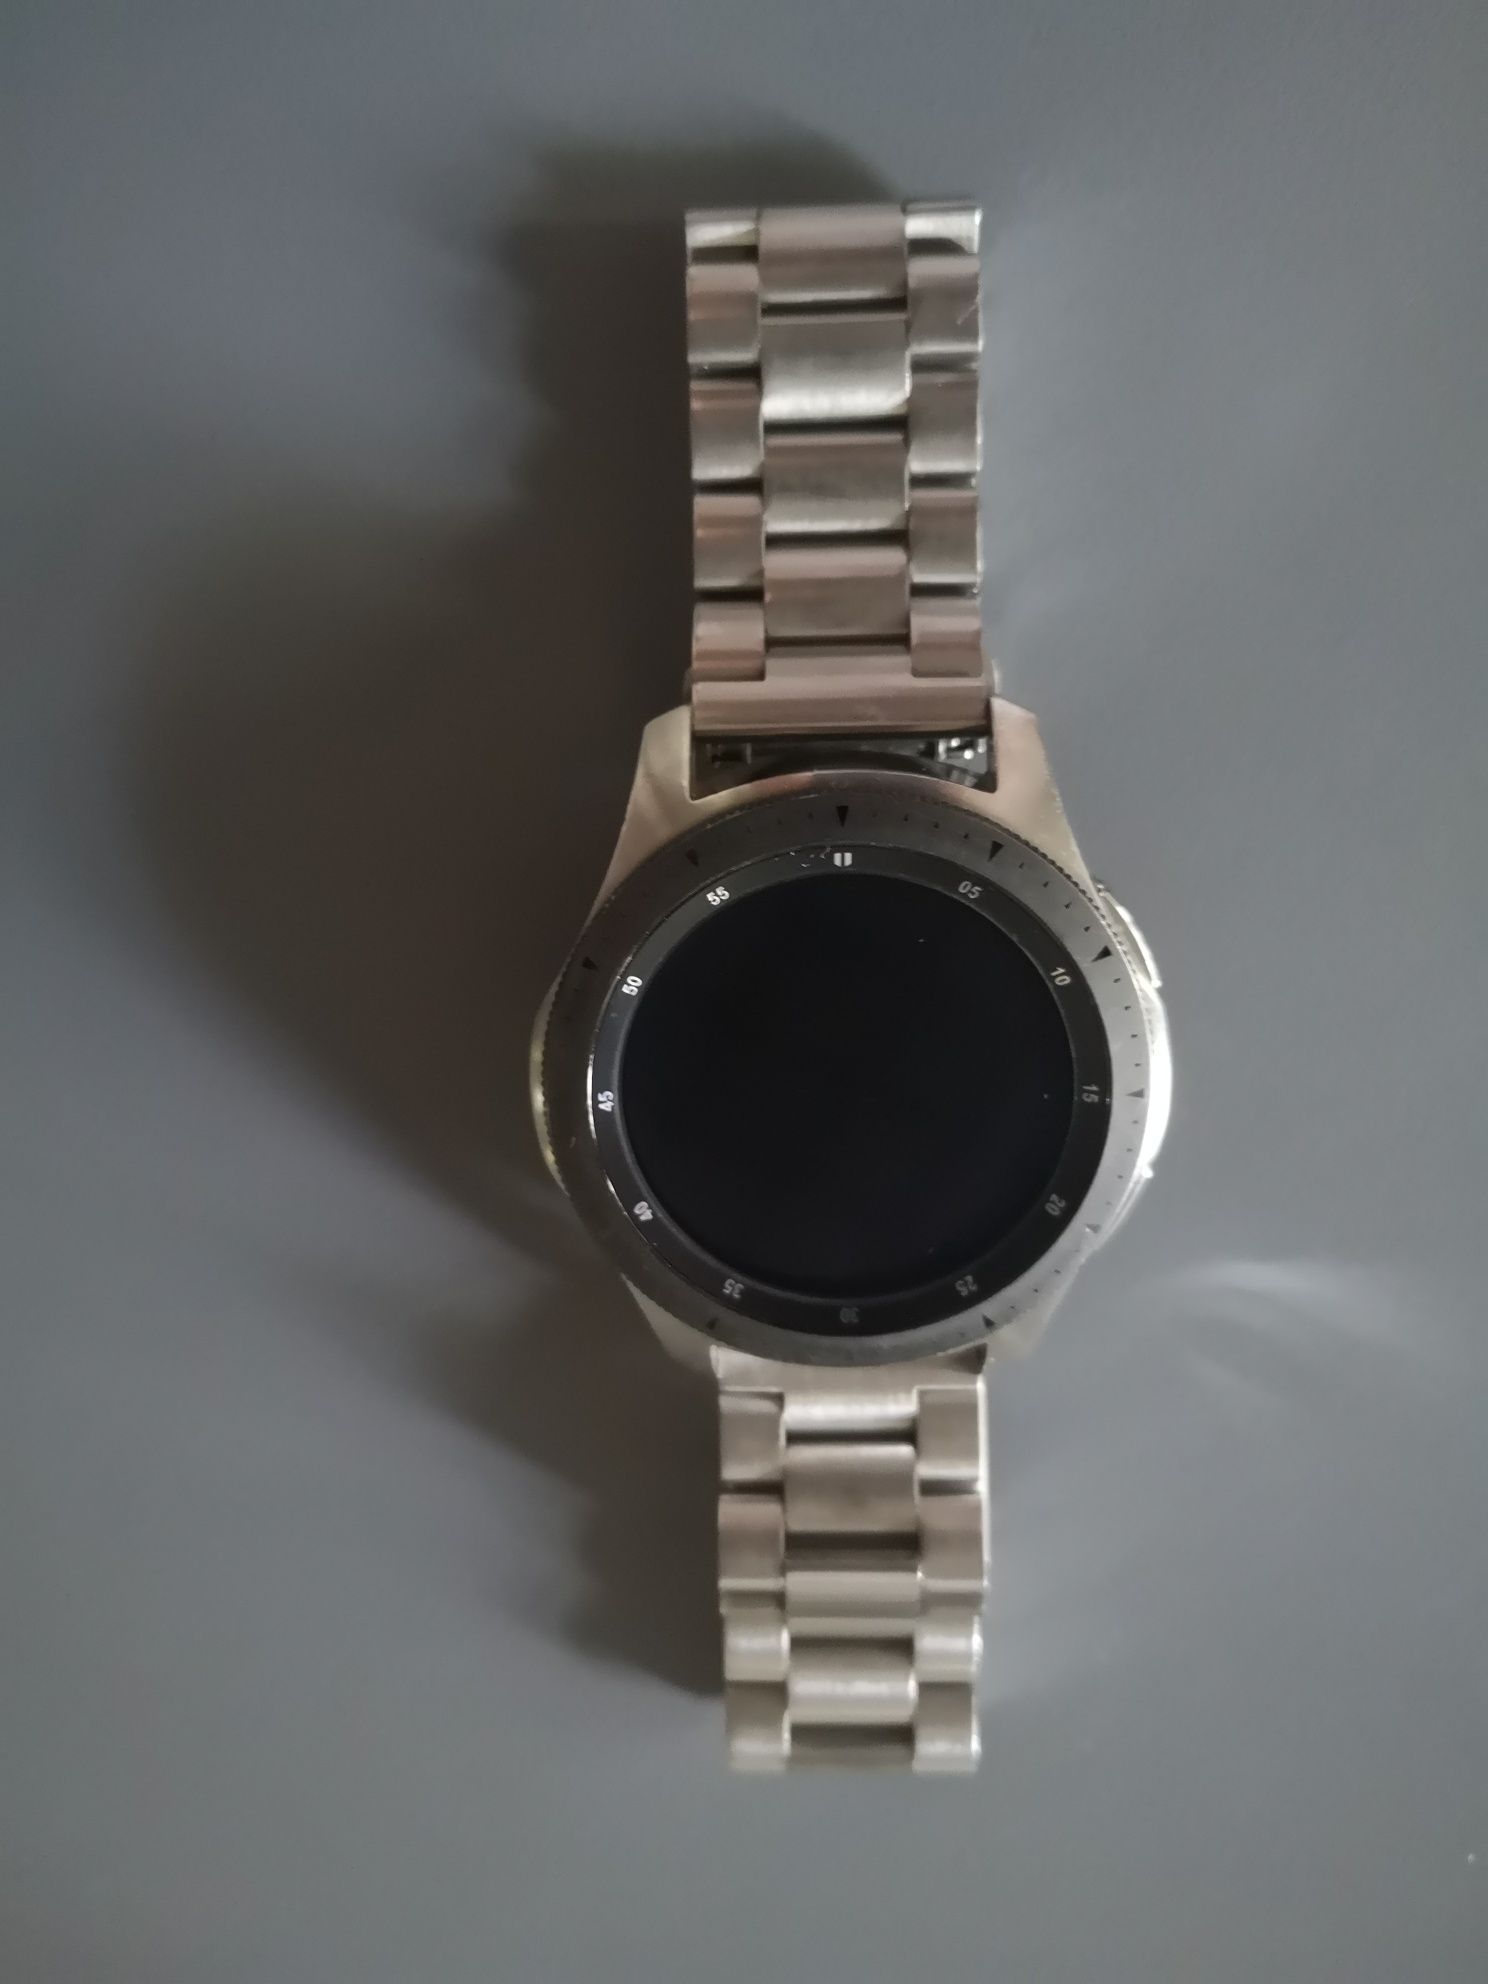 Samsung Galaxy Watch R800 46mm Silver